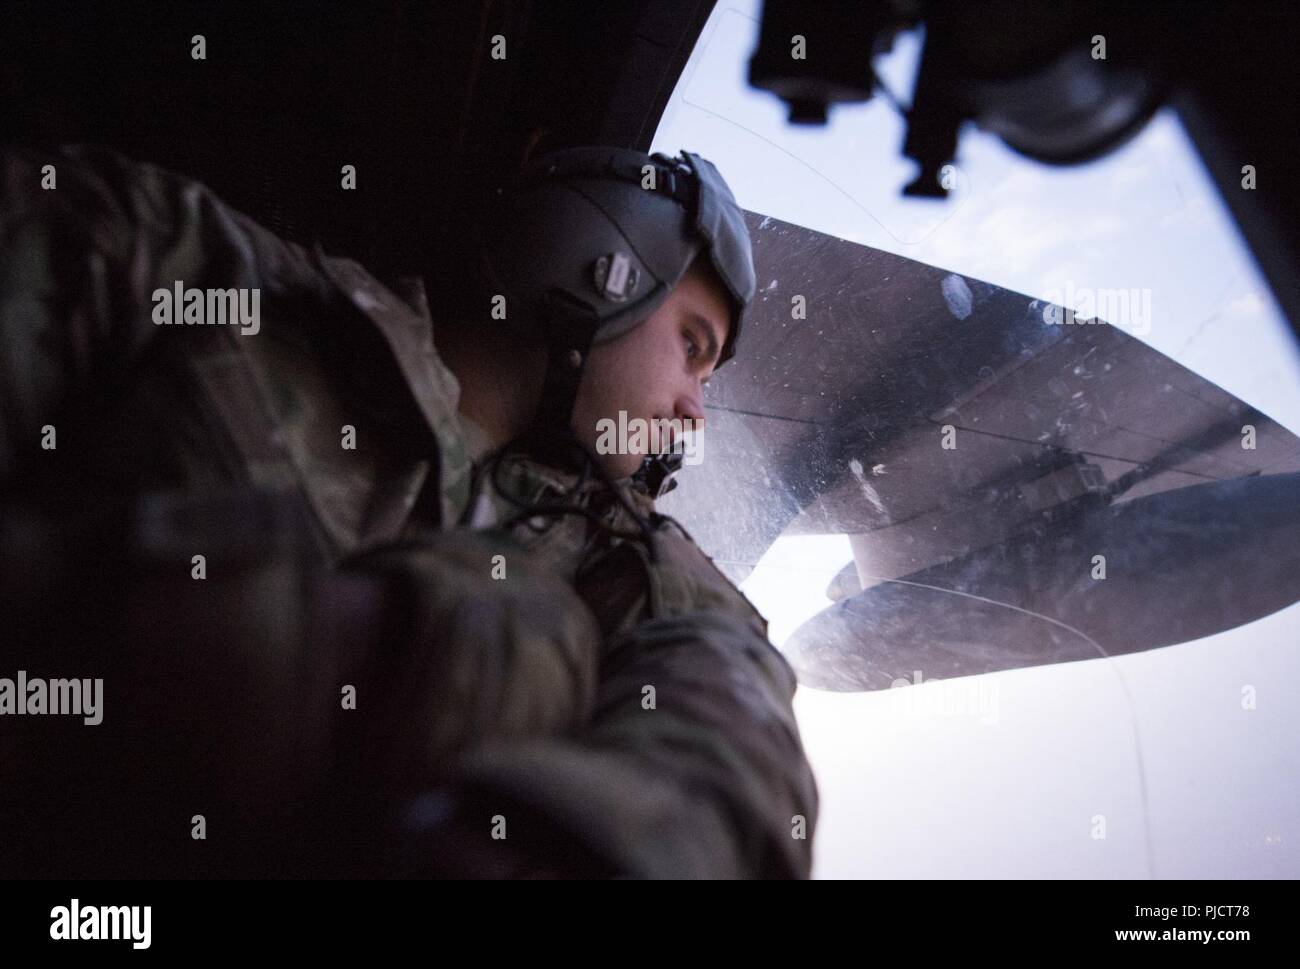 Eine besondere Mission Aviator 16 Expeditionary Special Operations Squadron zugeordnet blickt eine Tür Fenster eine AC-130 W Stinger II während einer Mission über den Irak, 23. Juli 2018 an Bord. Die AC-130 W Stinger II bietet Unterstützung aus der Luft zu US- und Koalitionstruppen im Irak und Syrien zur Unterstützung der Operation inhärenten Lösen. Die Koalition ist die ISIS zusammengeschlossen, um Kräfte zu besiegen, indem sie Unterstützung aus der Luft auf dem Schlachtfeld. Stockfoto